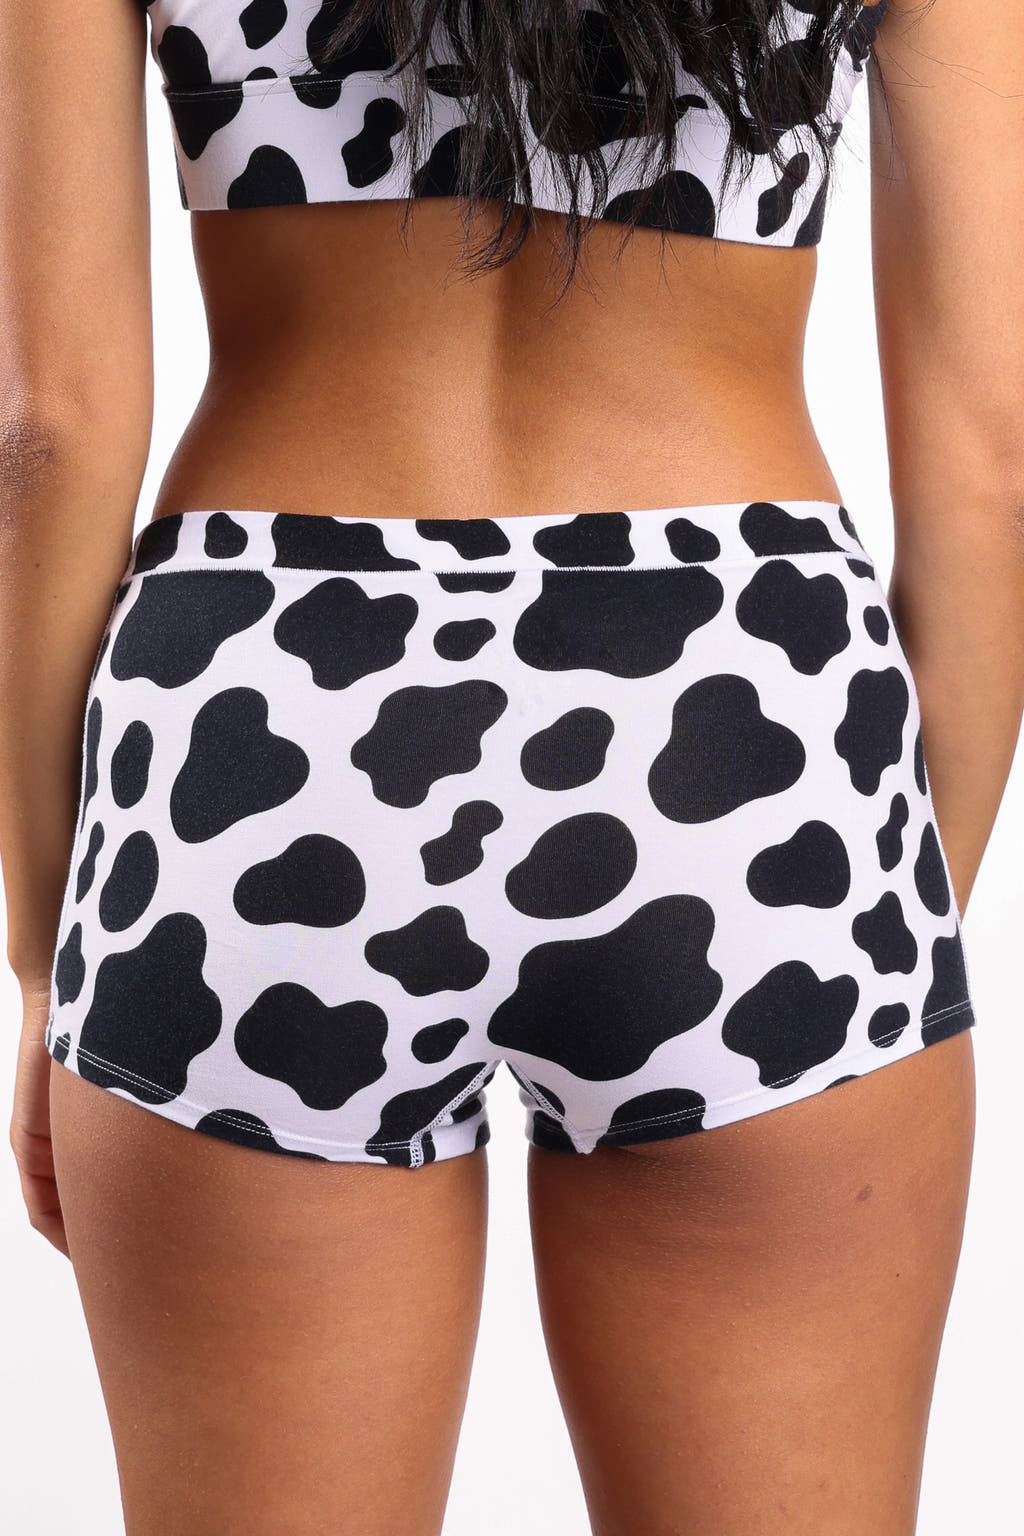 Cow print underwear for women